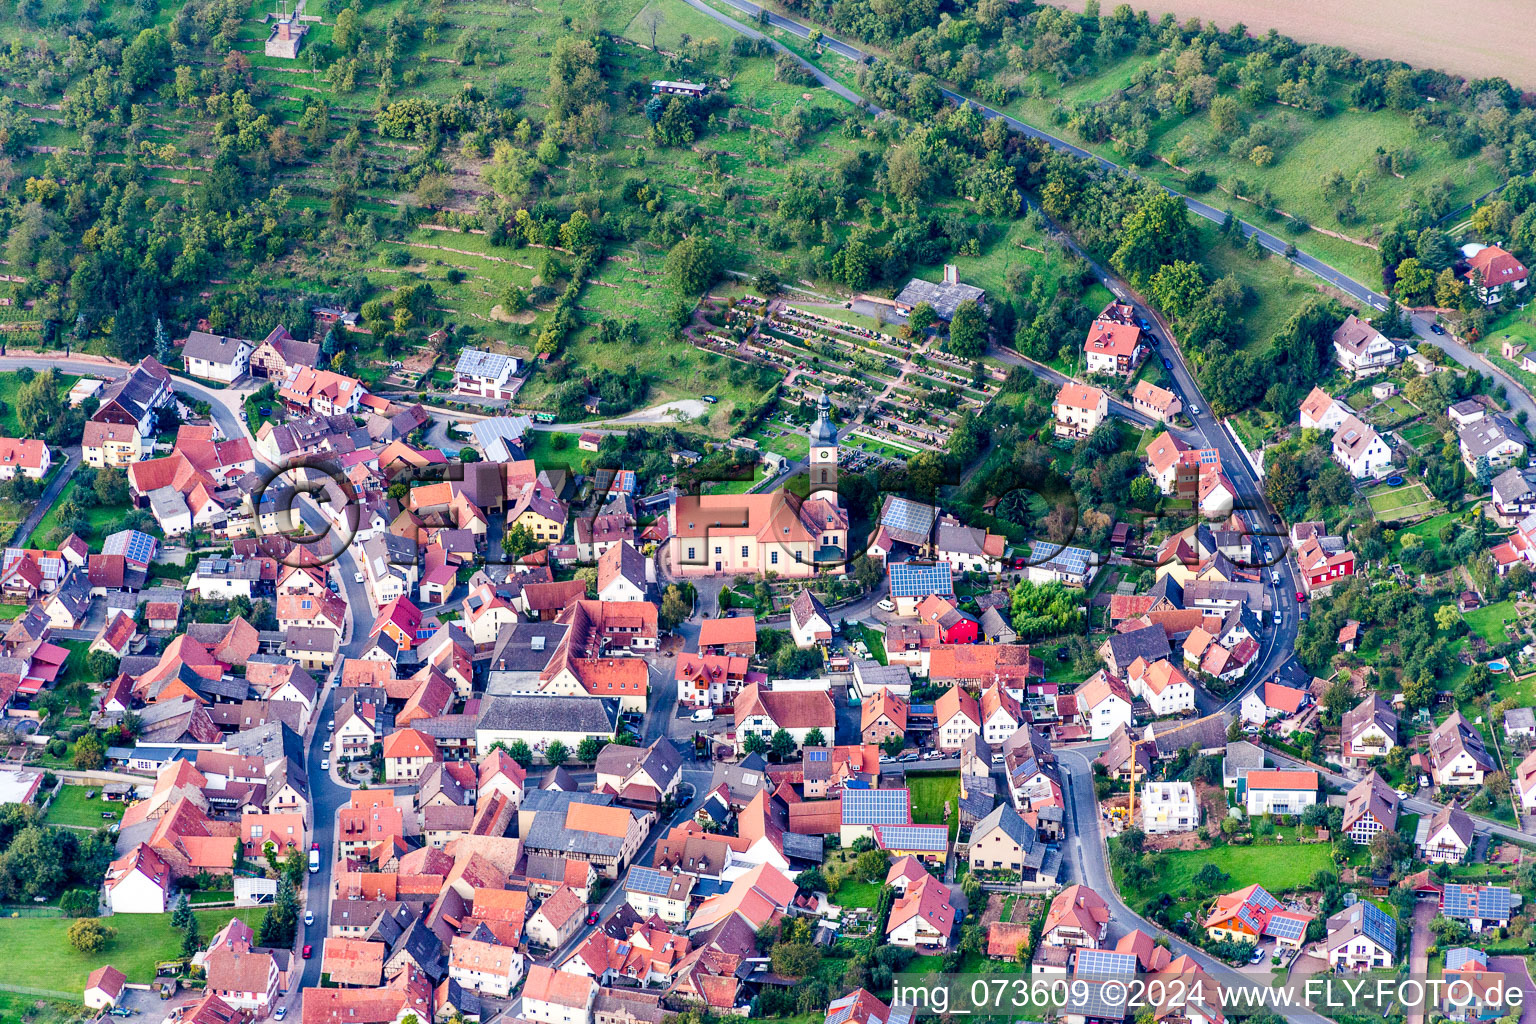 Luftbild von Ortsansicht der Straßen und Häuser der Wohngebiete im Ortsteil Reicholzheim in Wertheim im Bundesland Baden-Württemberg, Deutschland